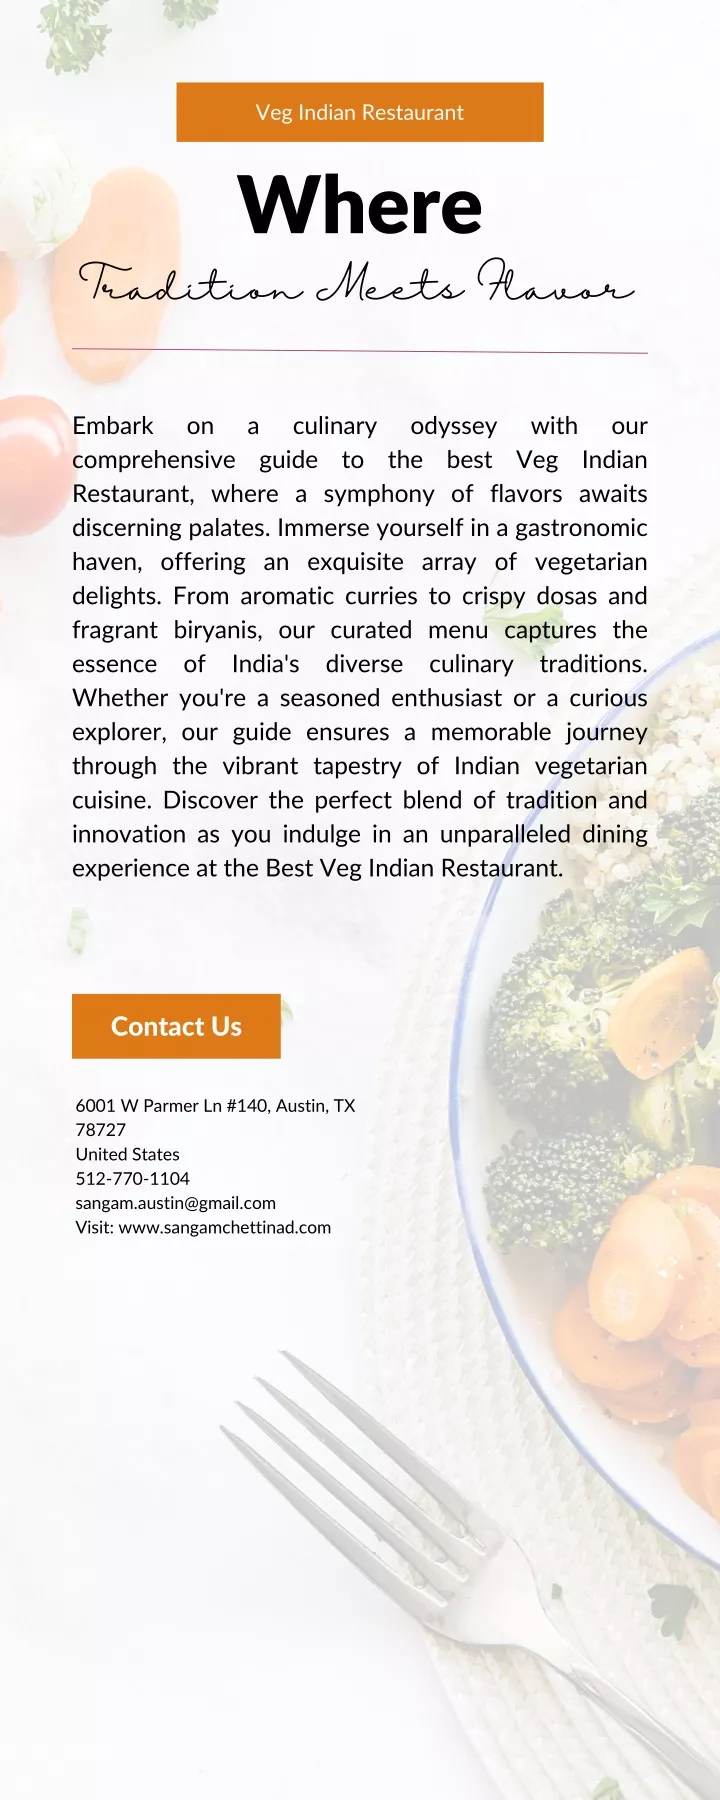 veg indian restaurant where